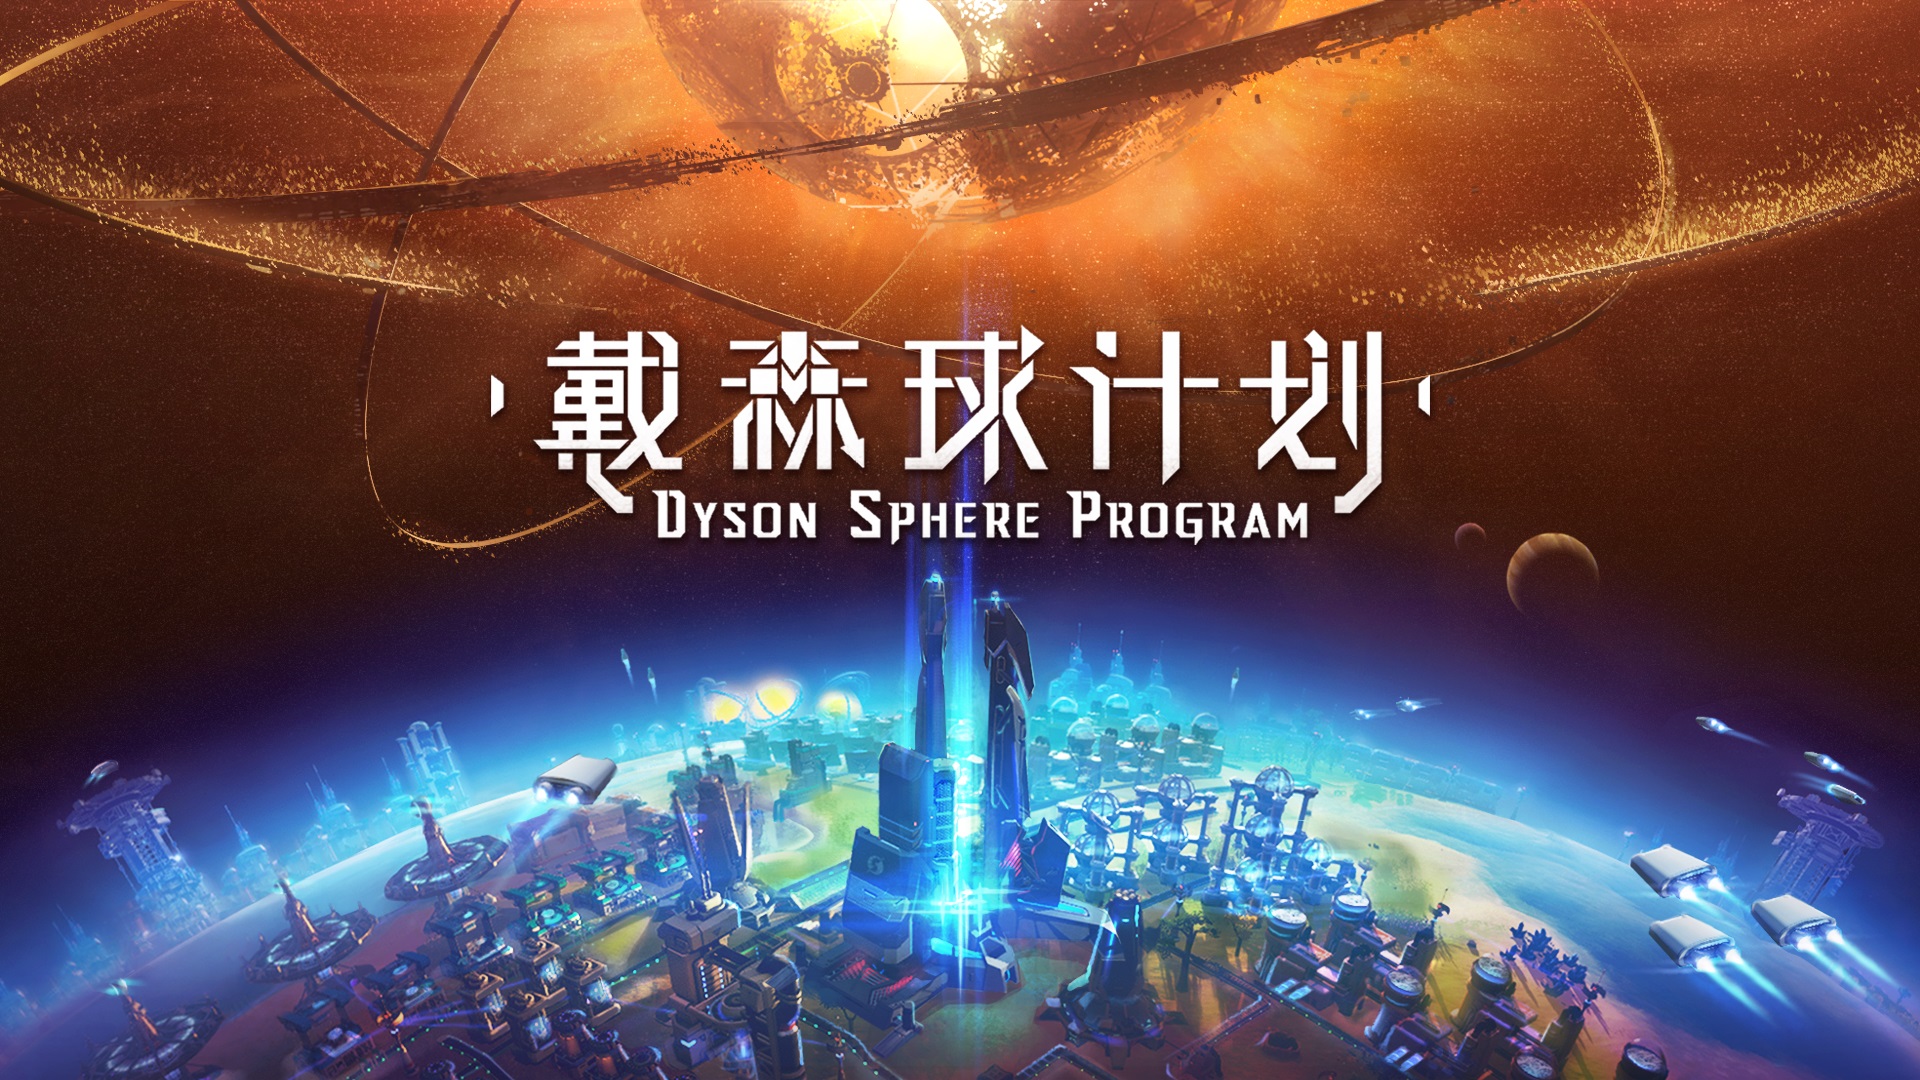 国产游戏《戴森球计划》上架Steam 将参加东京电玩展